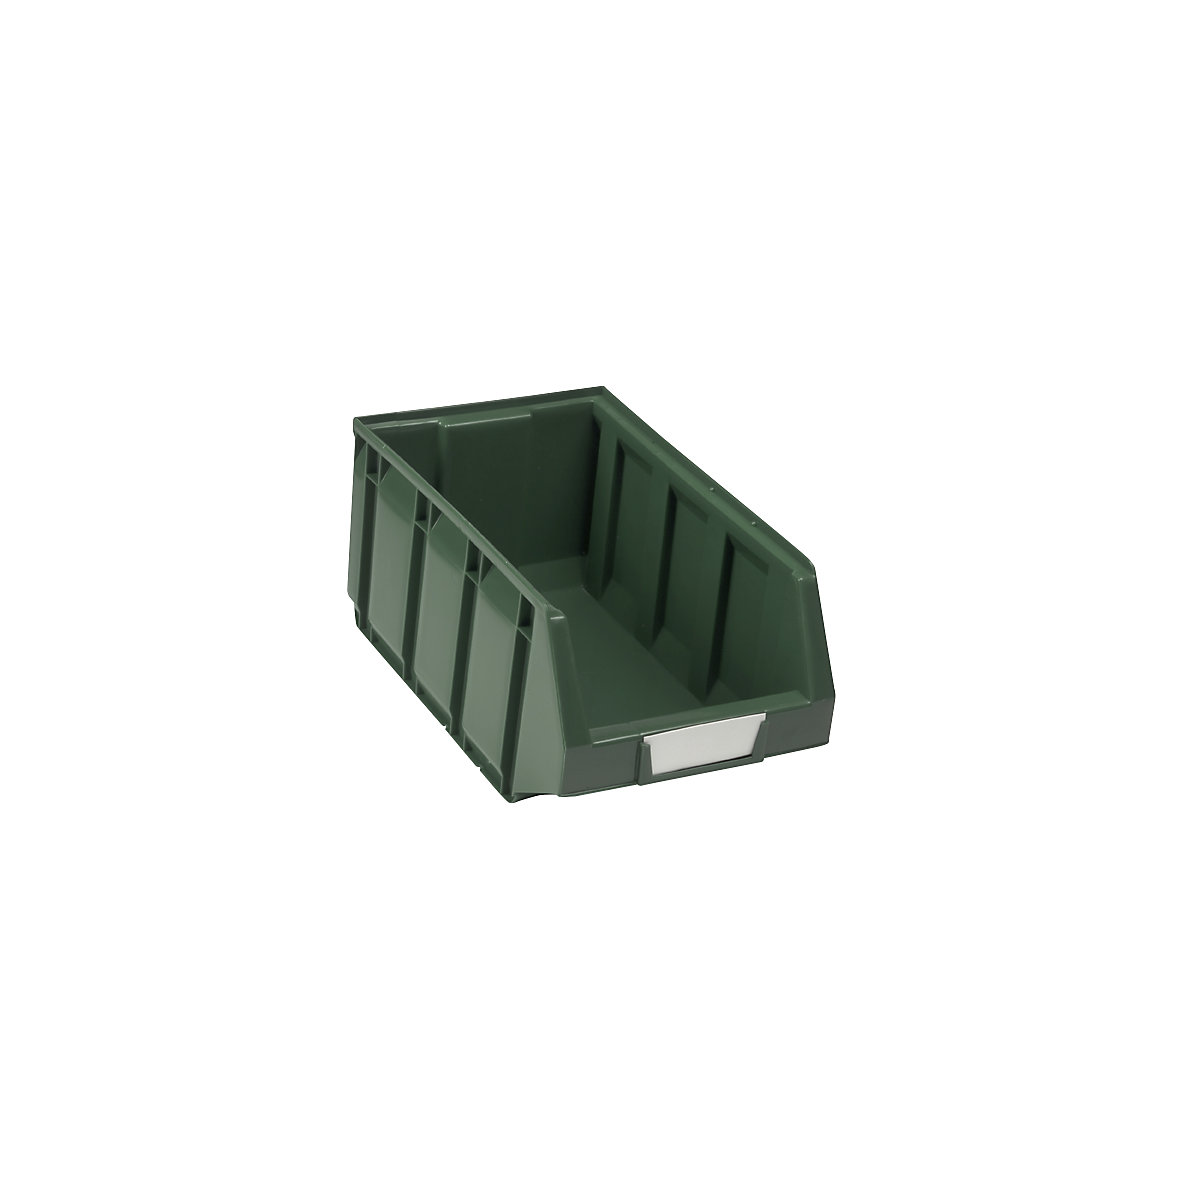 Odprta skladiščna škatla iz polietilena, DxŠxV 345 x 205 x 164 mm, zelena, DE 24 kosov-9